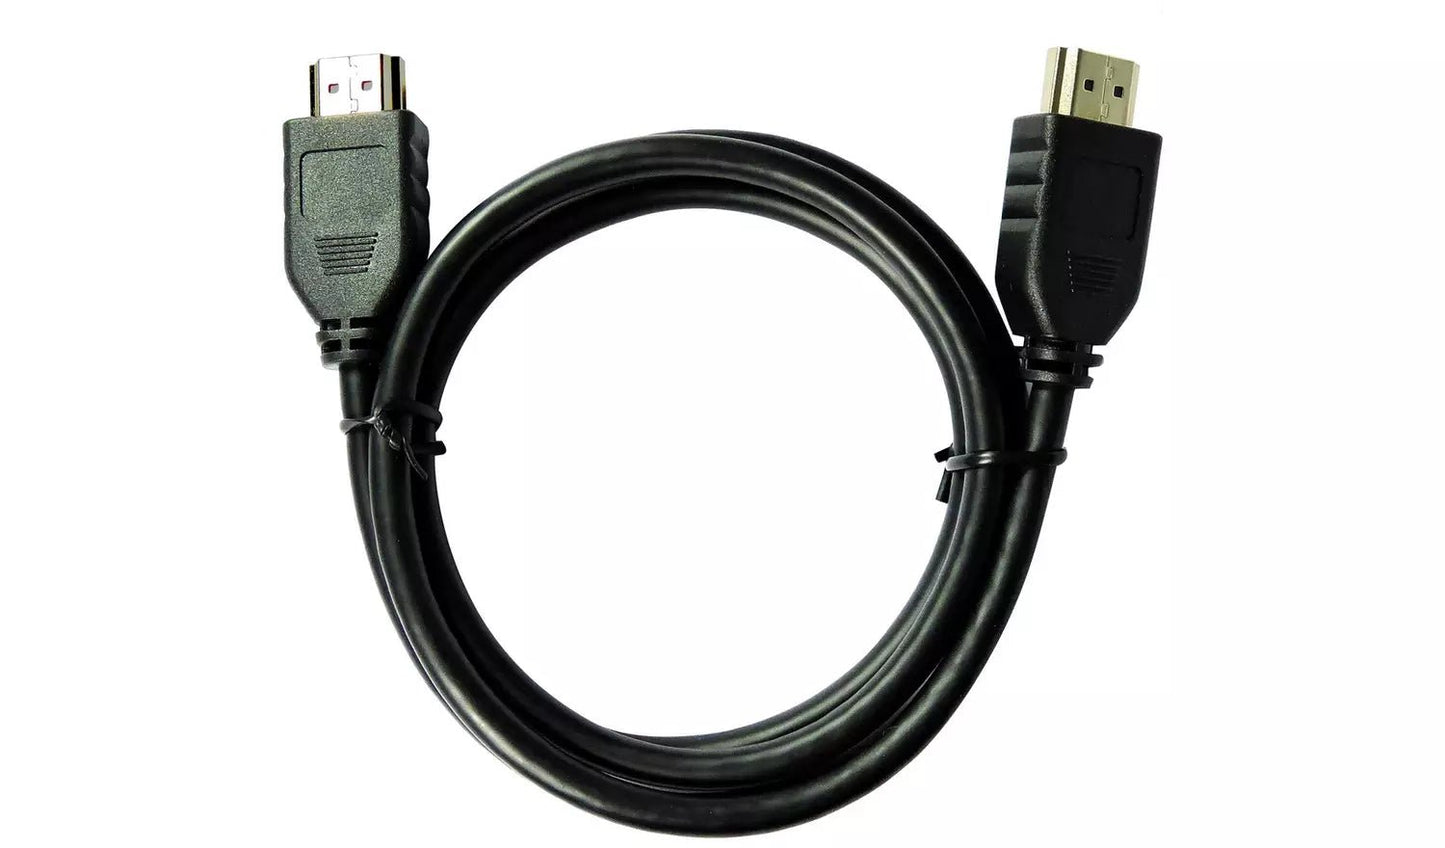 HDMI kabelis 1 m V1.4 - Reltek